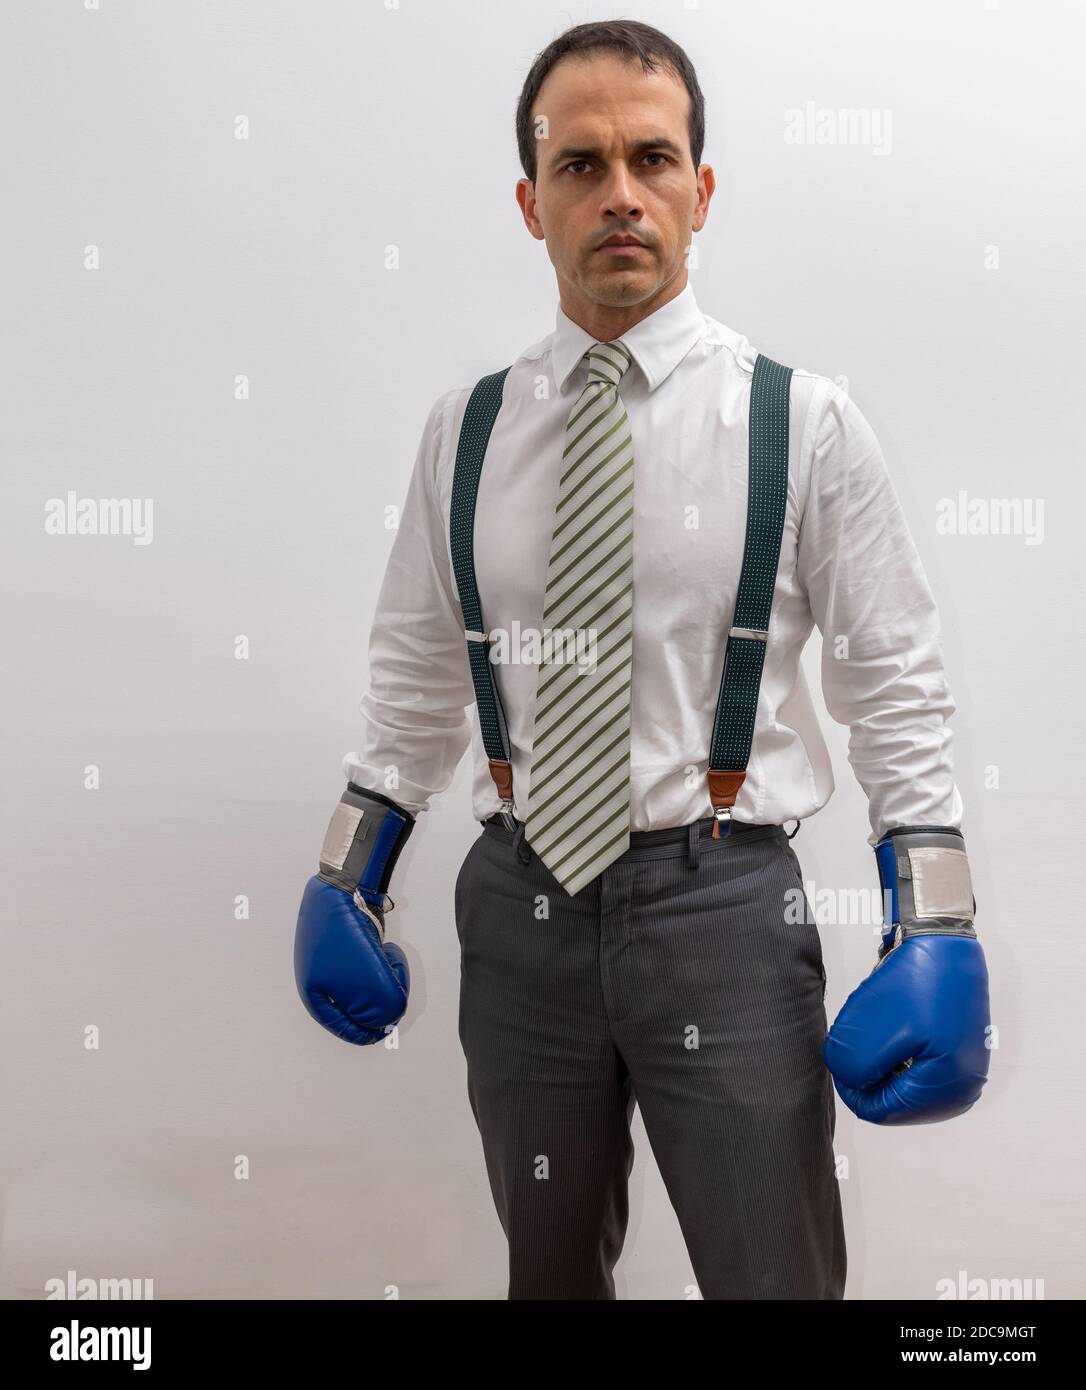 Hombre de pie con ropa formal, tirantes, corbata, guante de boxeo y mirando  a la cámara Fotografía de stock - Alamy